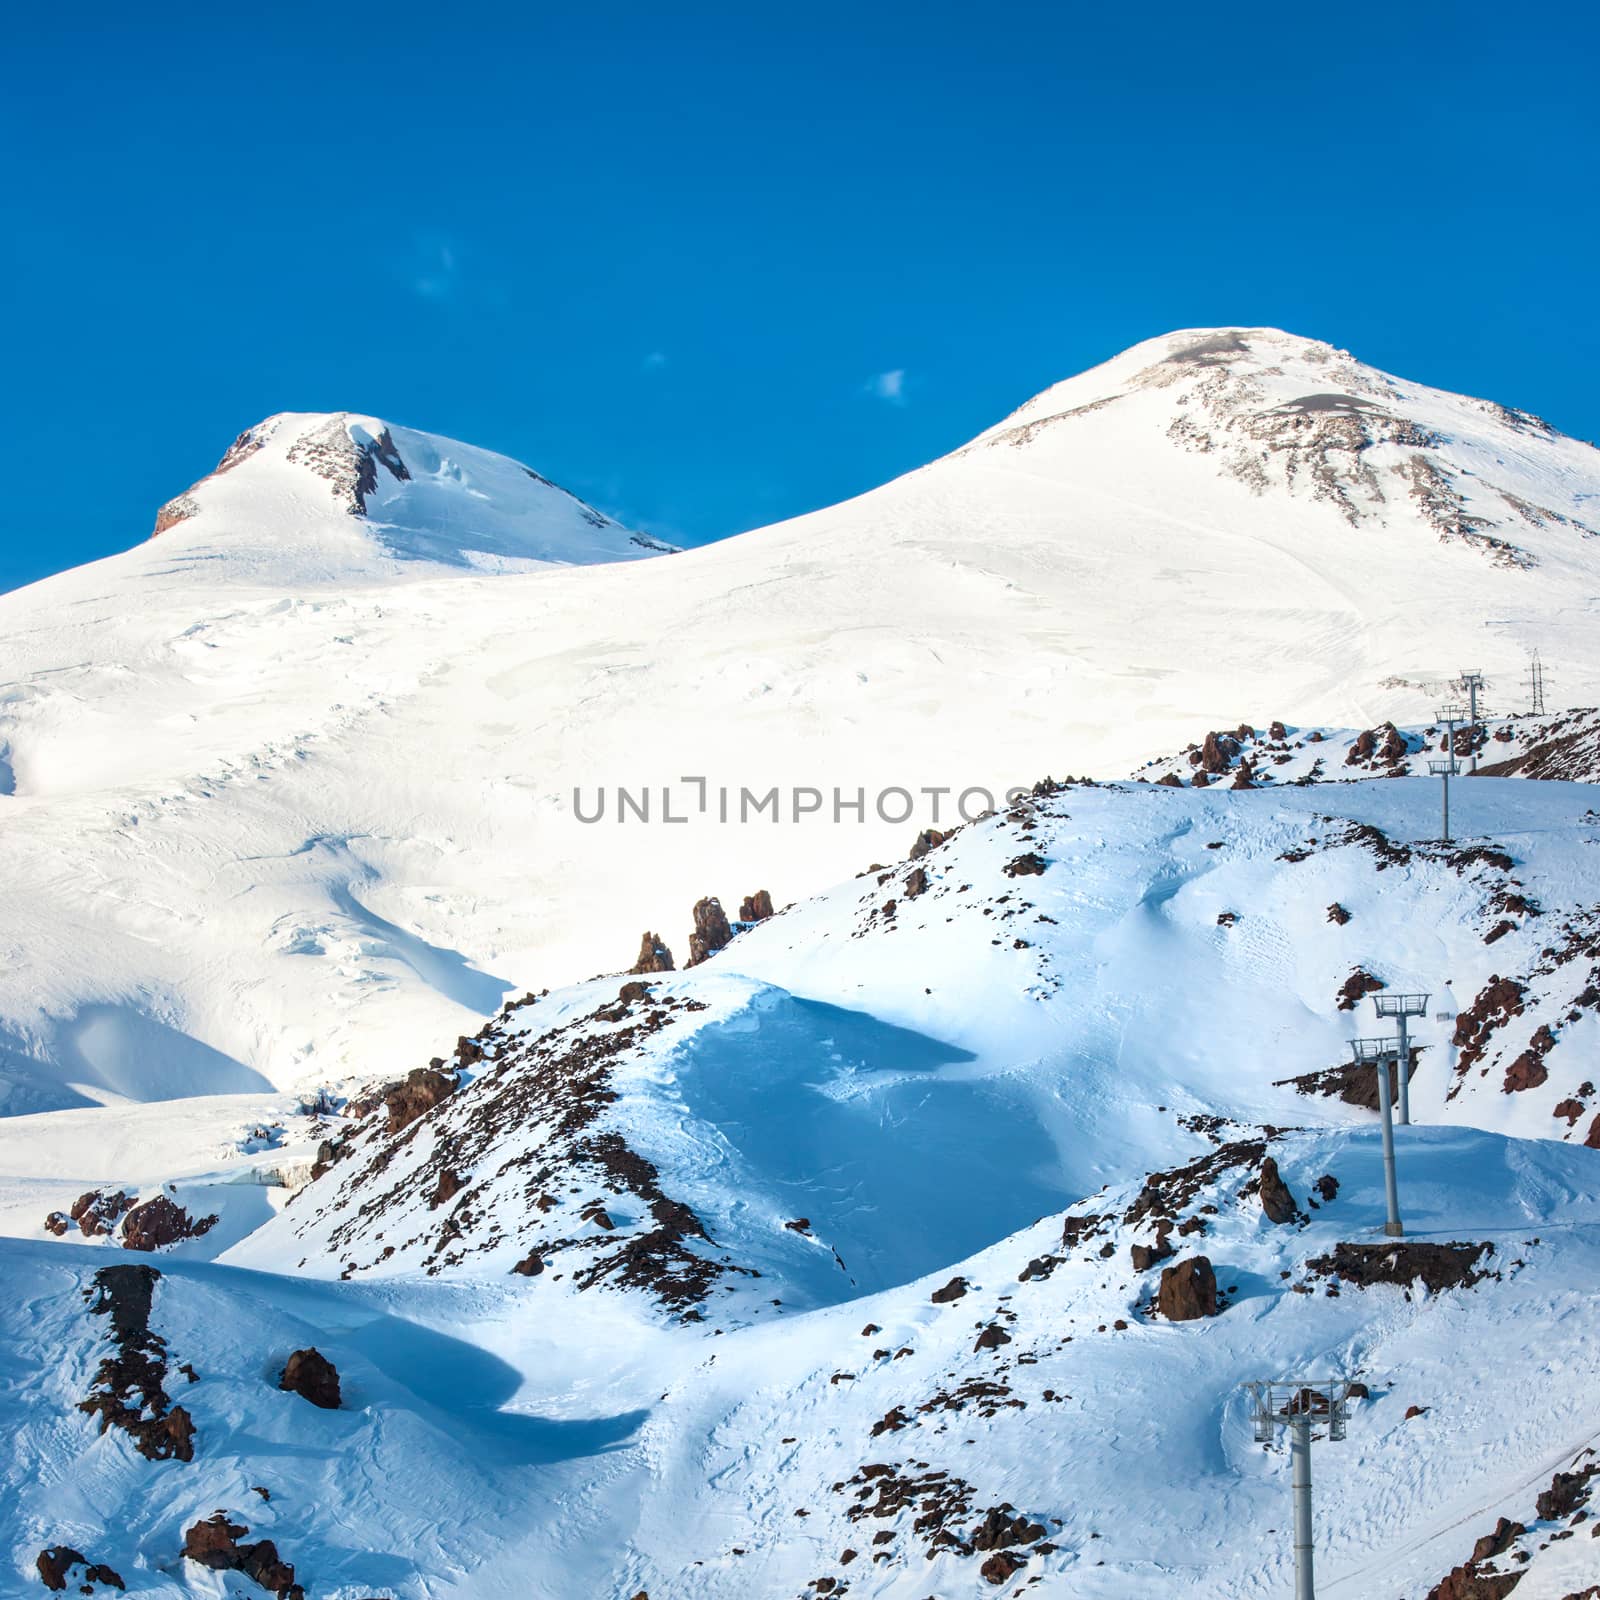 Two peaks of Elbrus mountain in snow. Winter landscape.